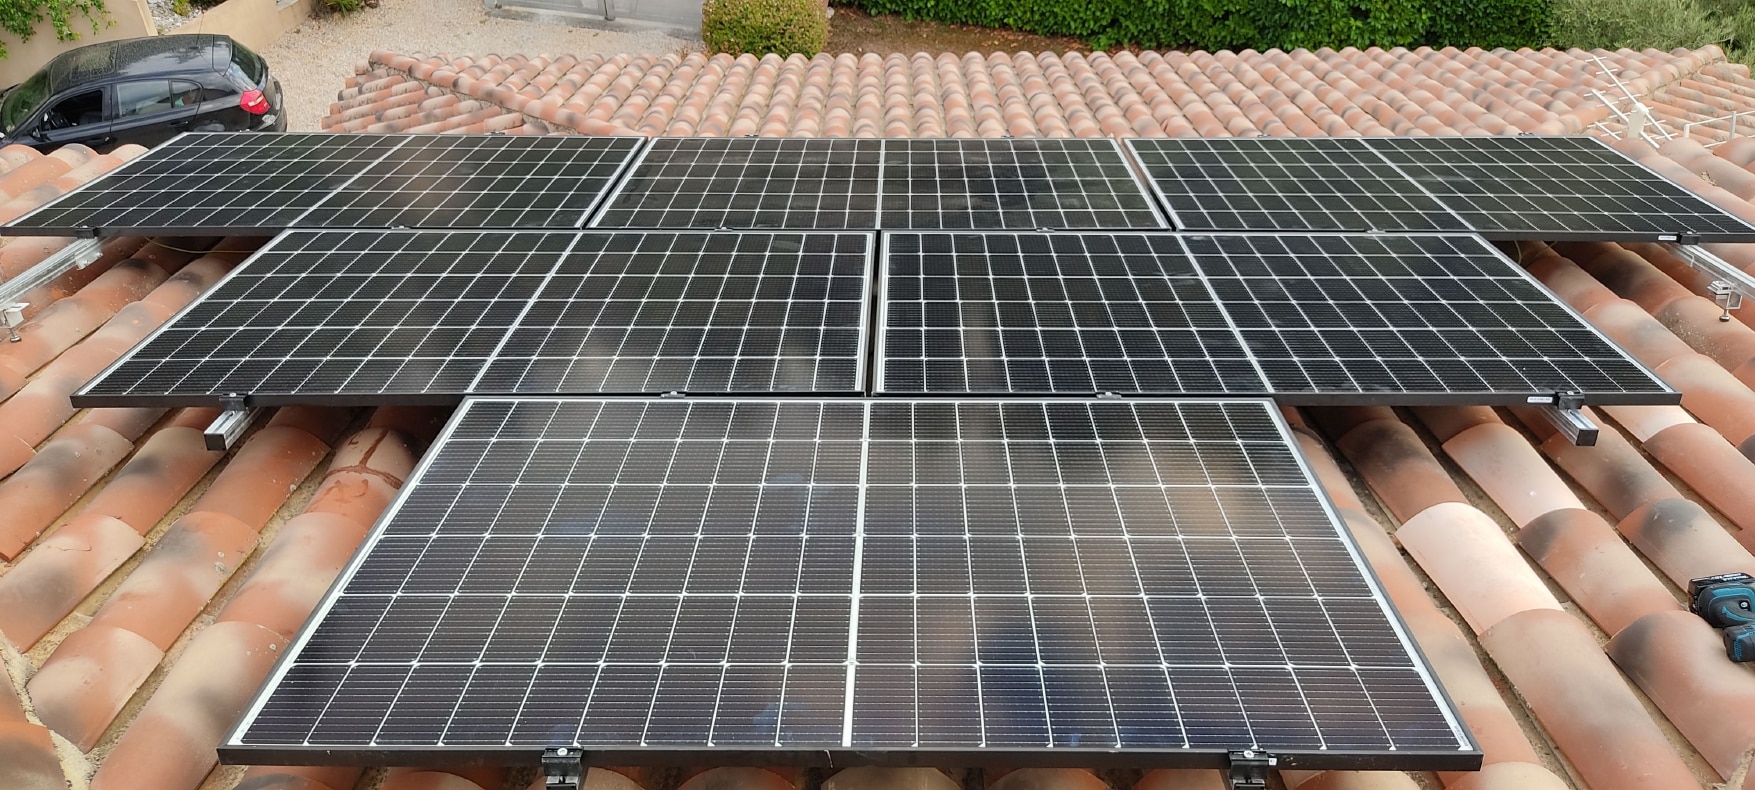 <span class="popup-mms-14">Installations de panneaux solaires sur toiture inclinée - 4920W</span>